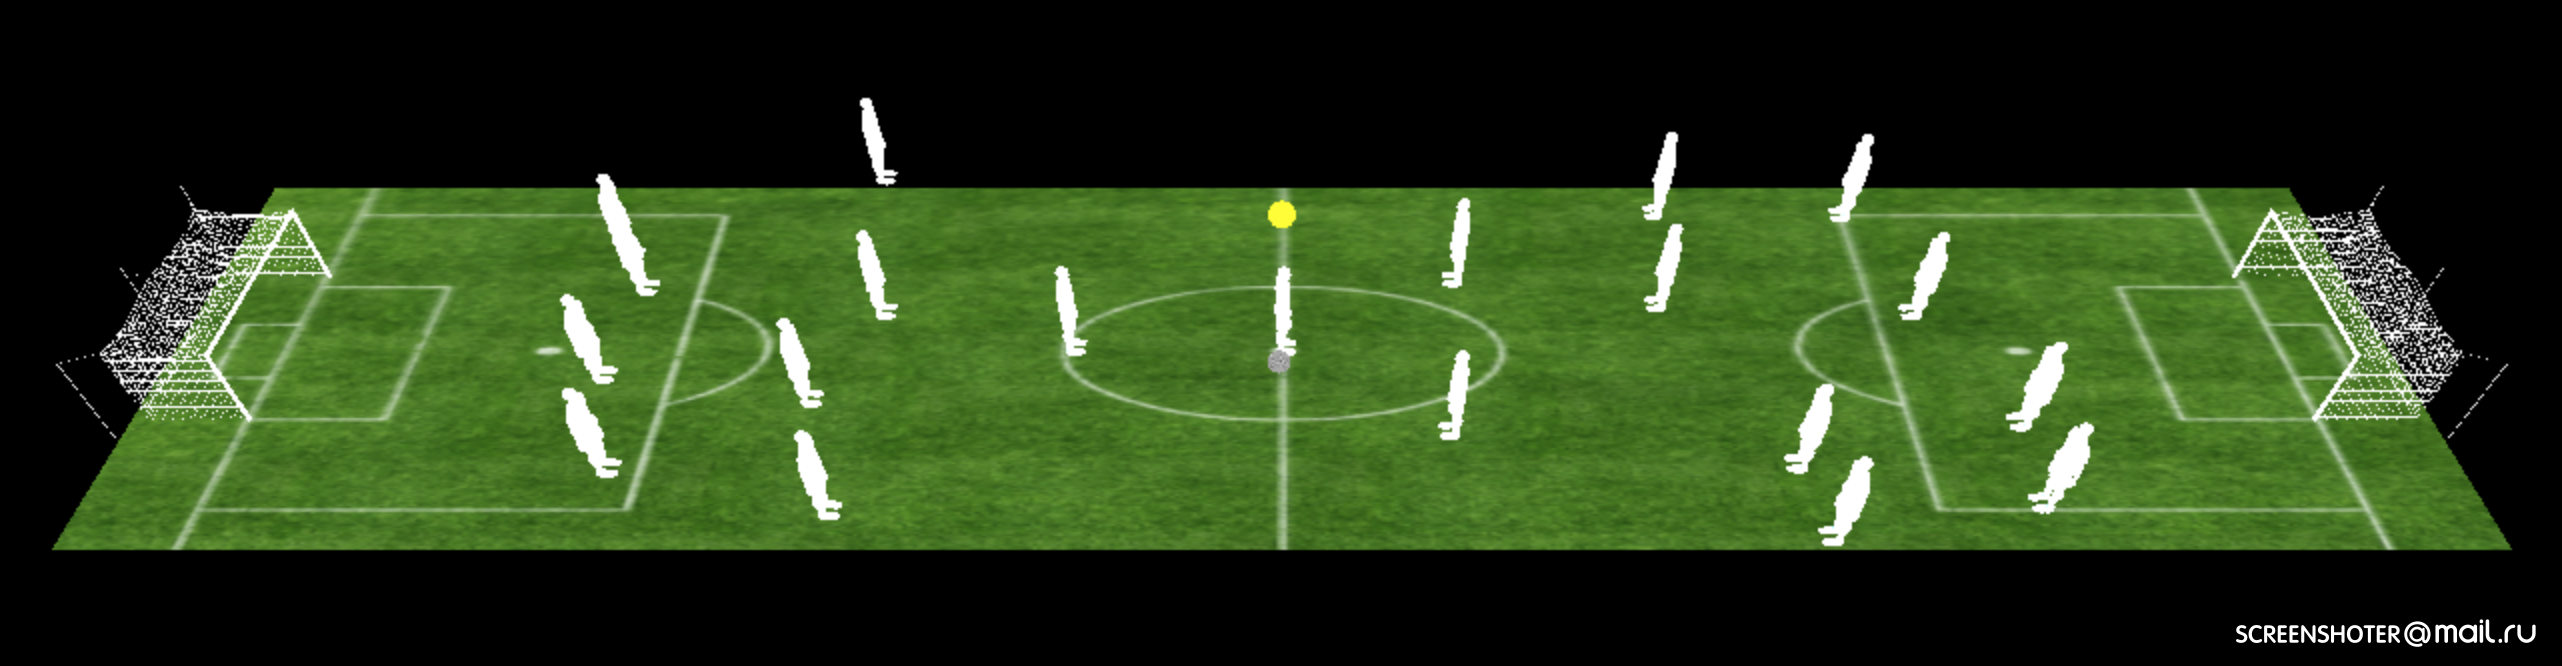 Как я браузерный 3D-футбол писала. Часть 2 - 4